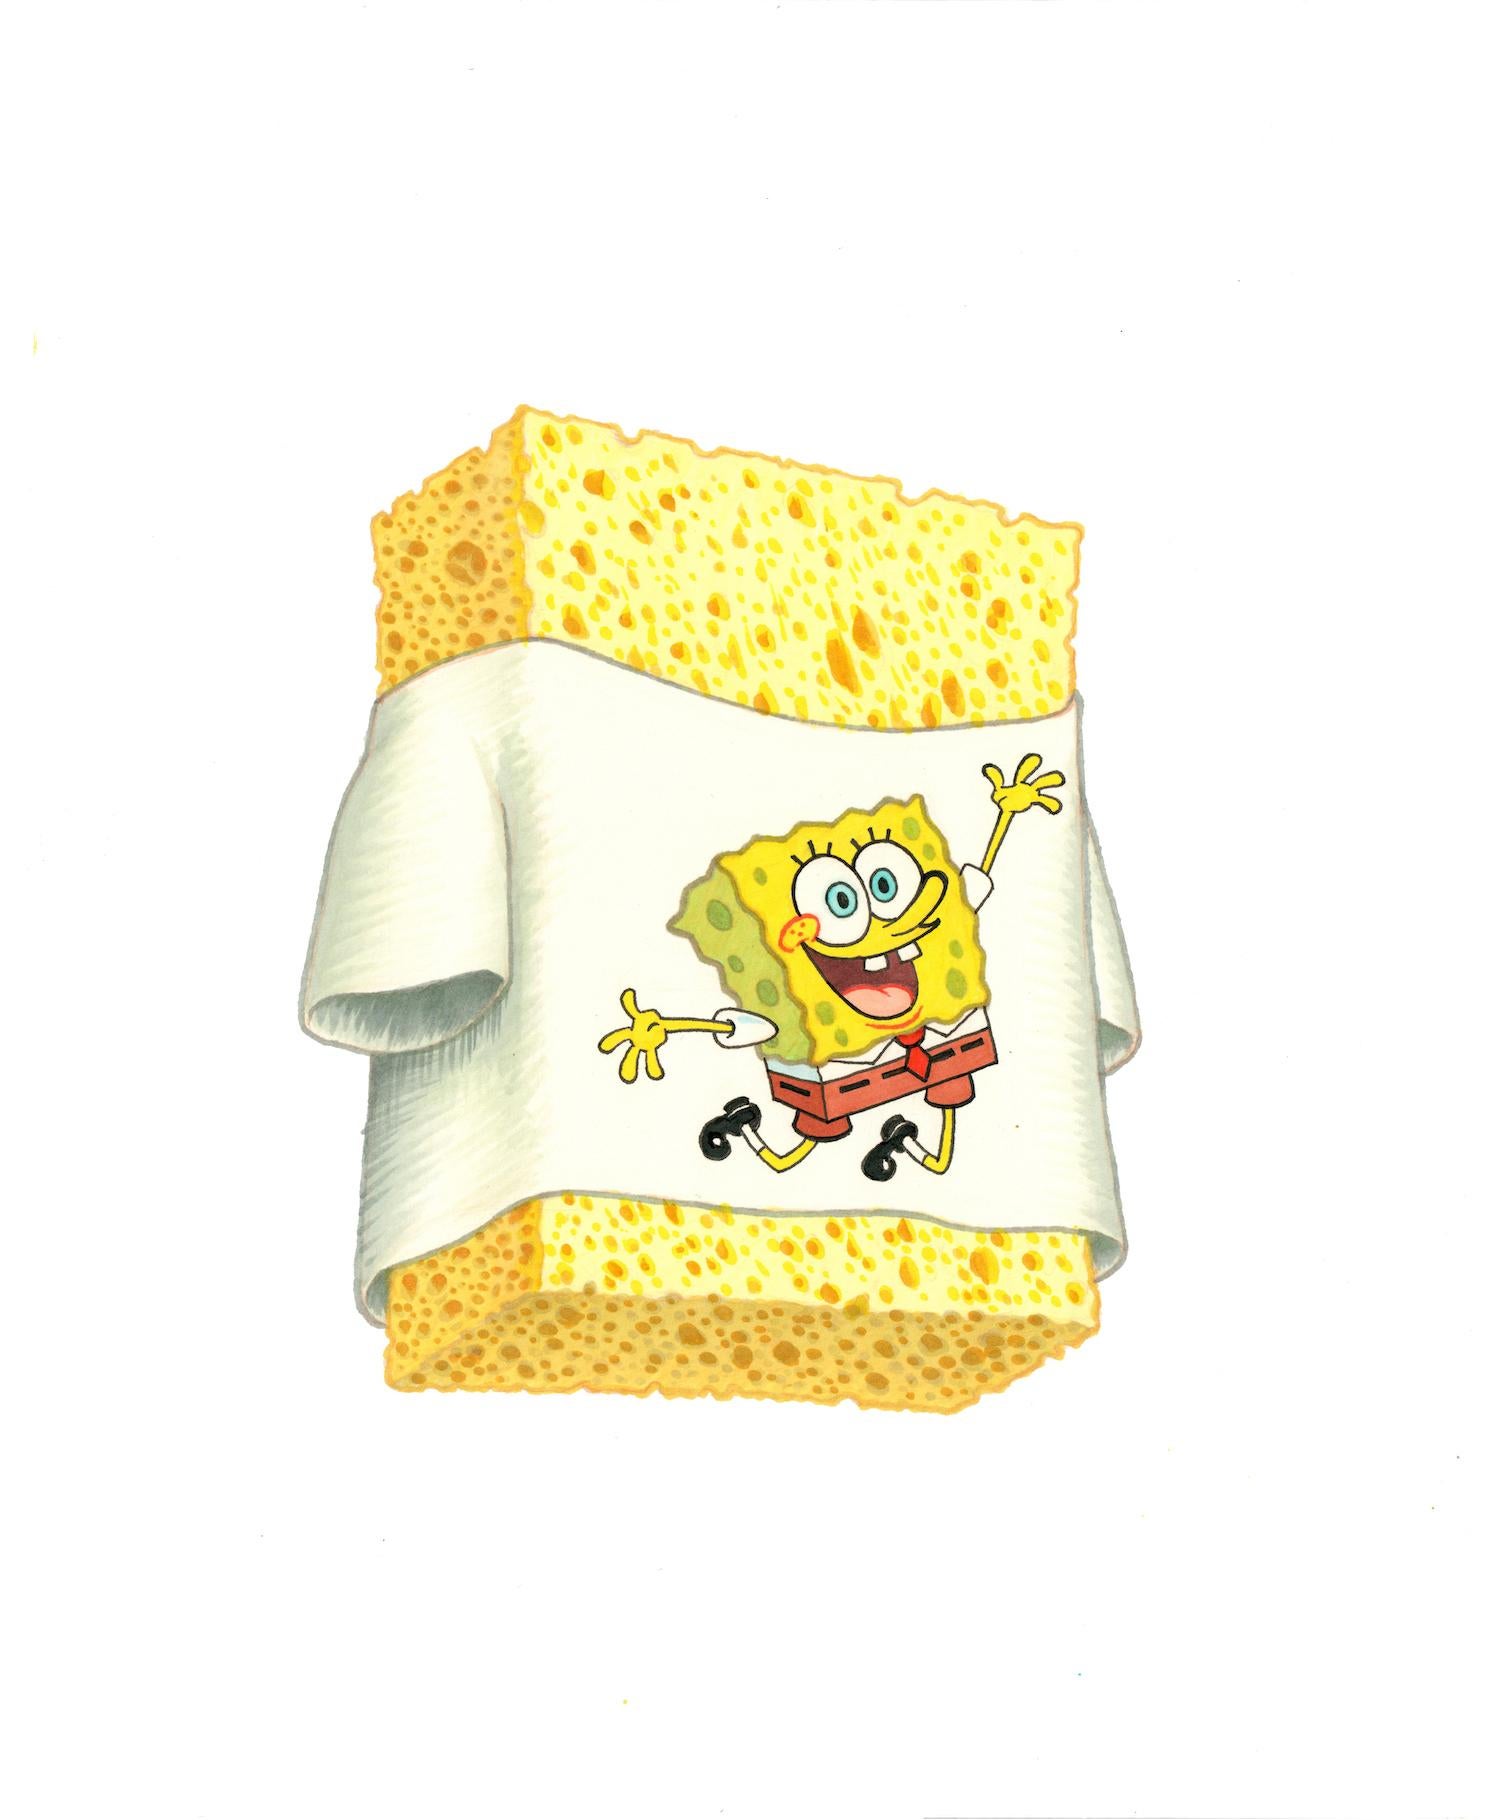 Spongebob - Art by Matt Buck